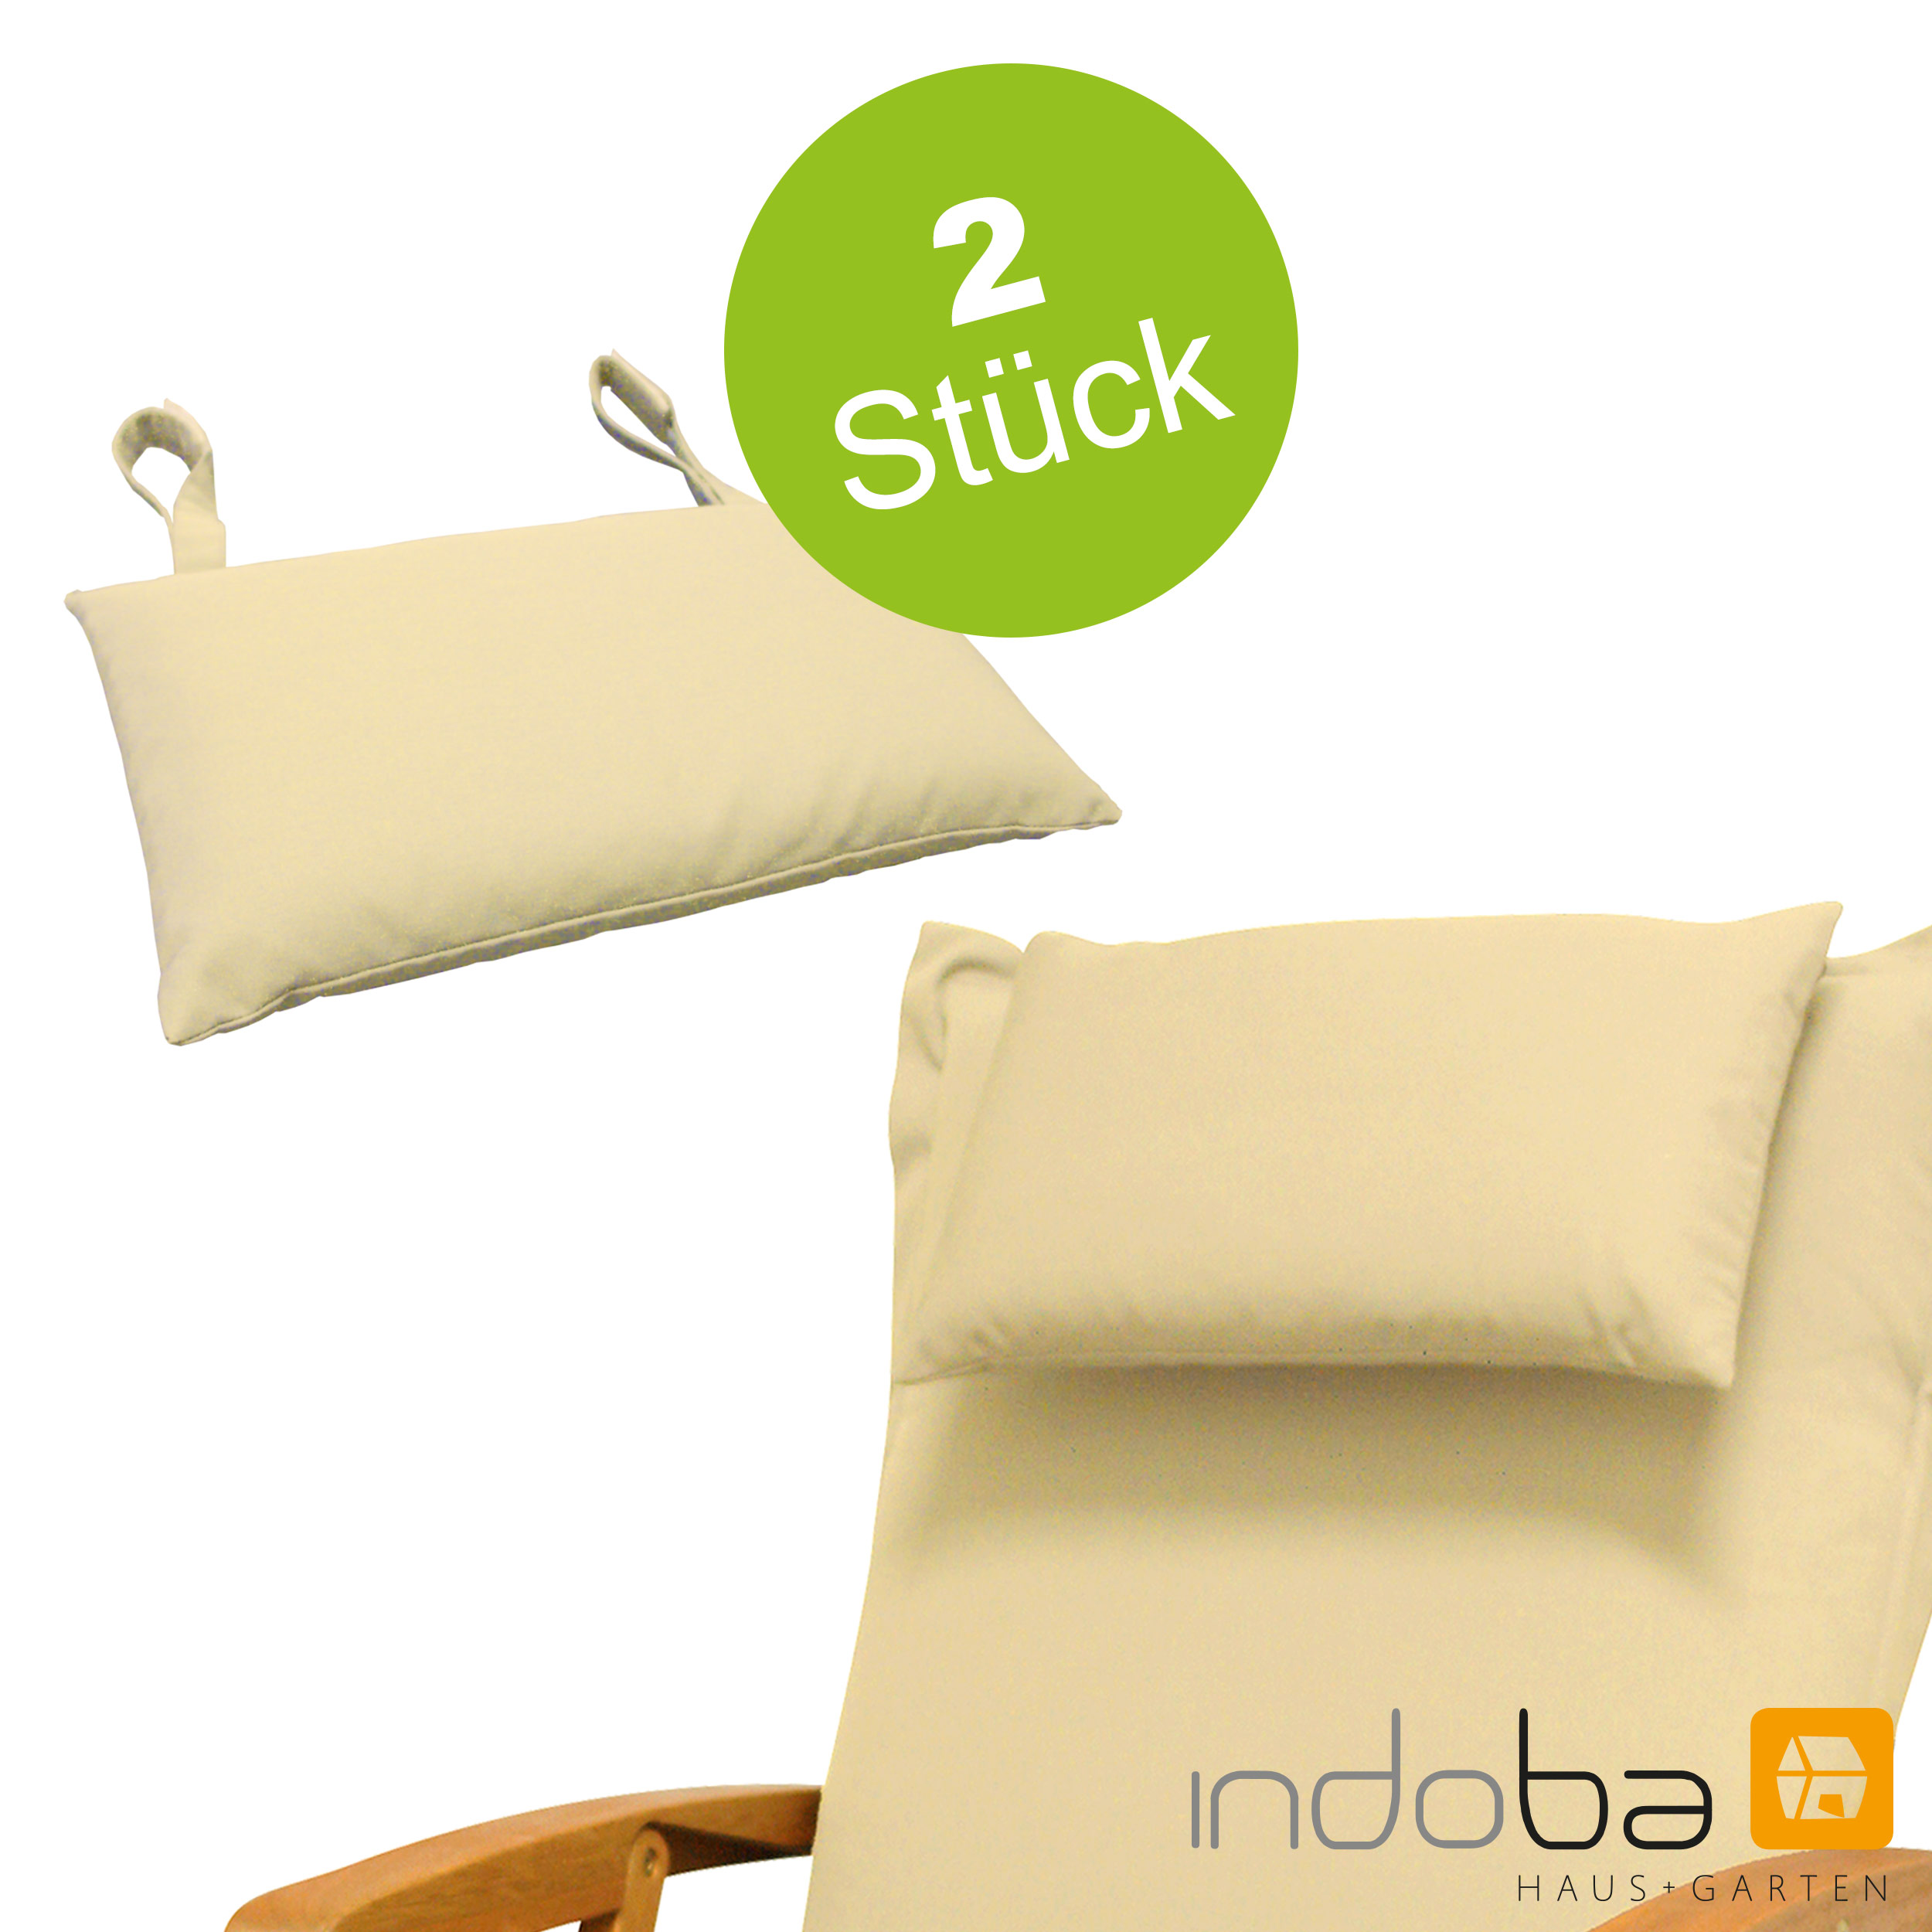 Indoba Sitzauflage Niederlehner Premium 4 Stück extra dick Beige